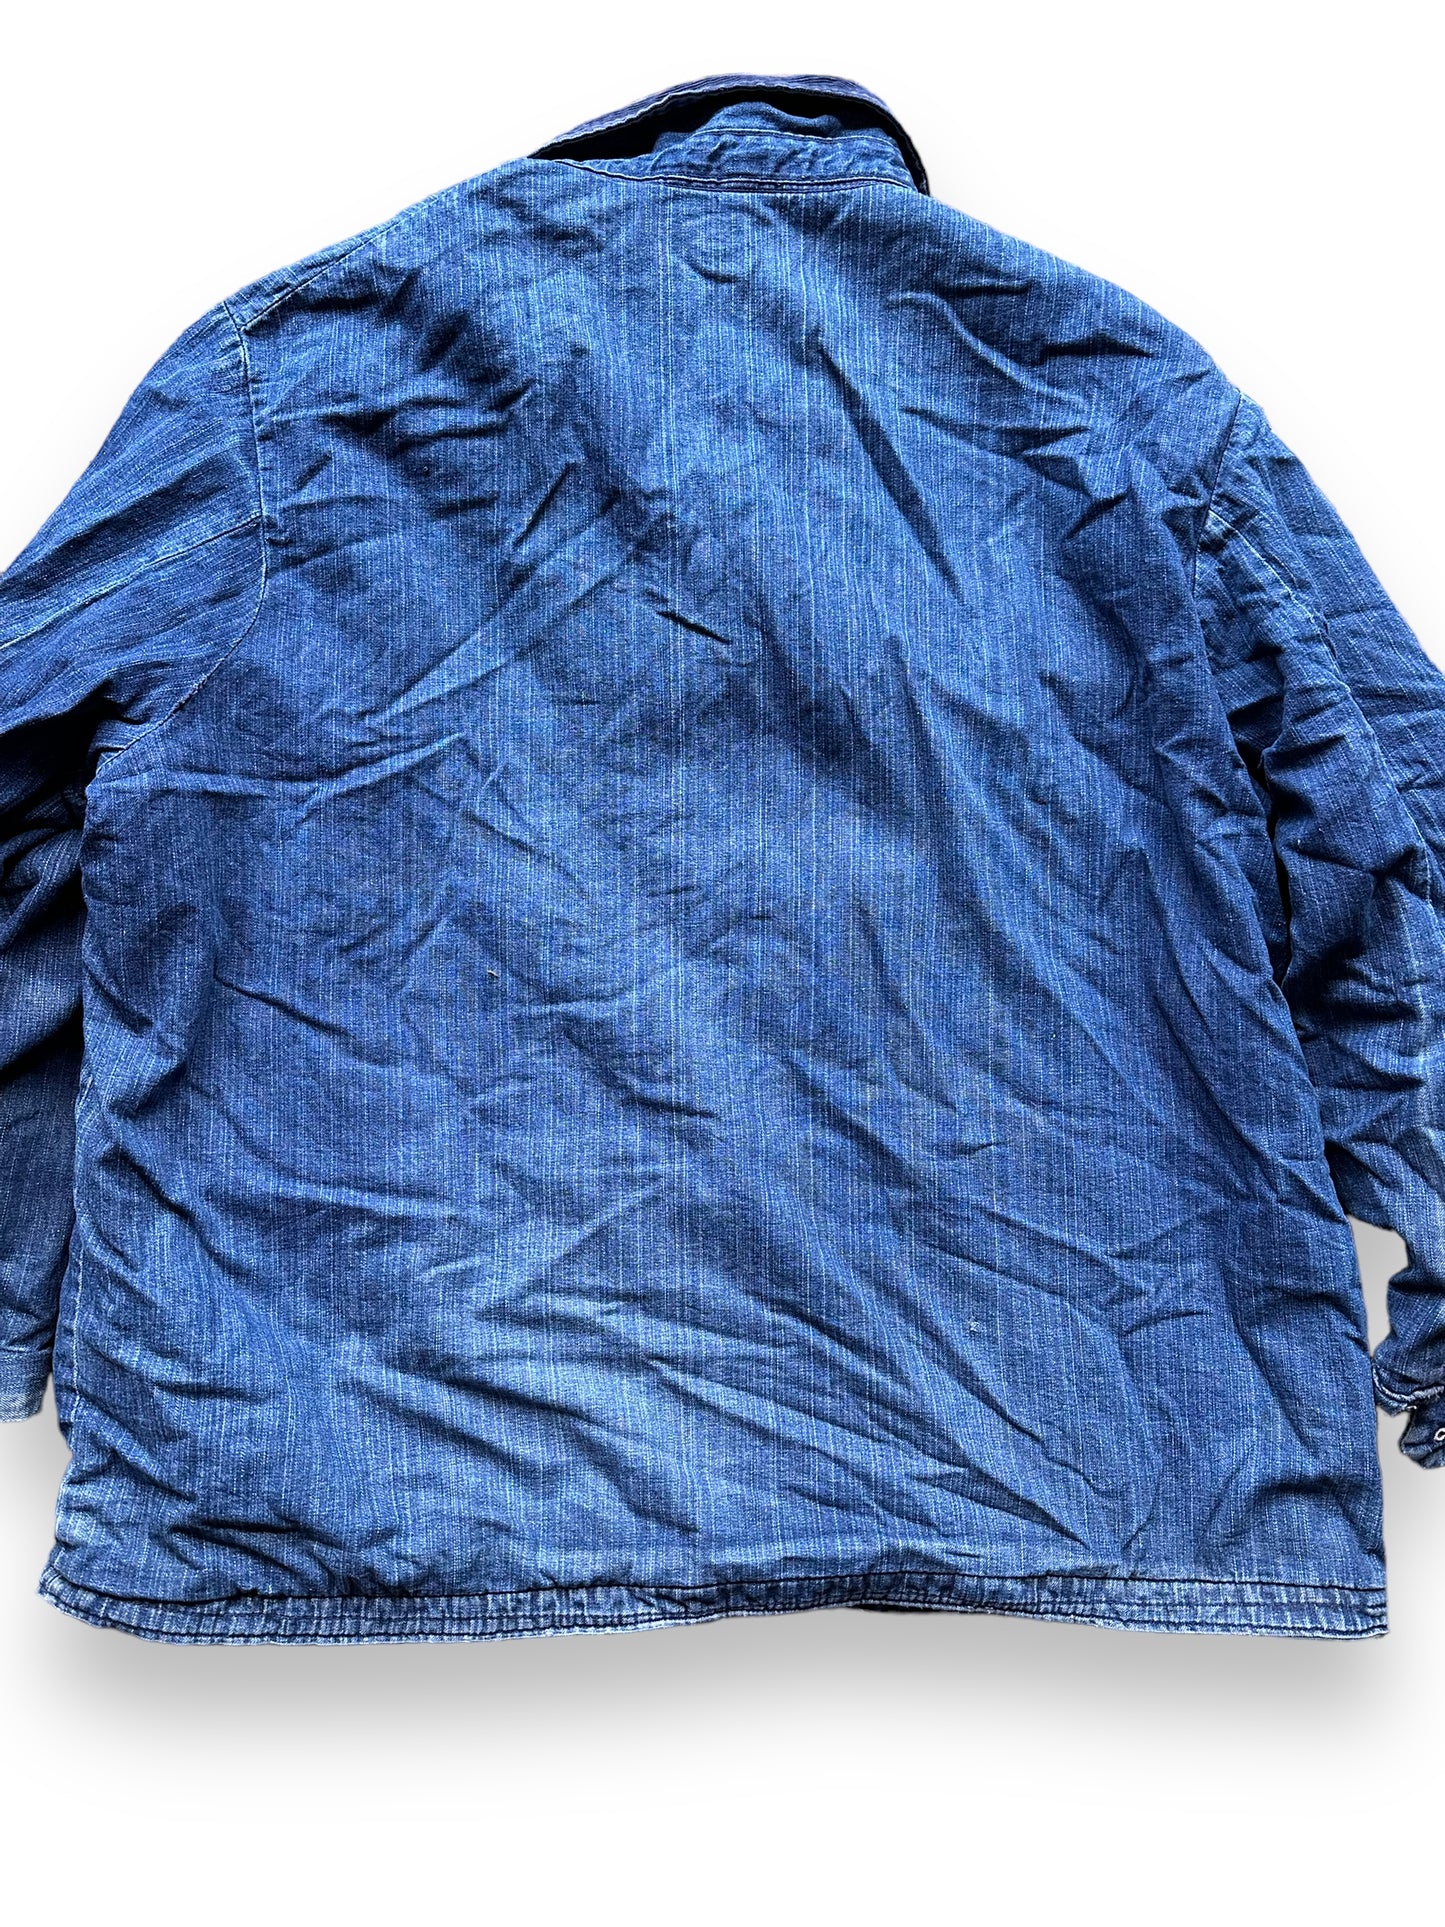 Rear Detail on Vintage Blanket Lined Wrangler Blue Bell Chore Coat SZ 50 | Vintage Denim Jacket Seattle | Seattle Vintage Clothing